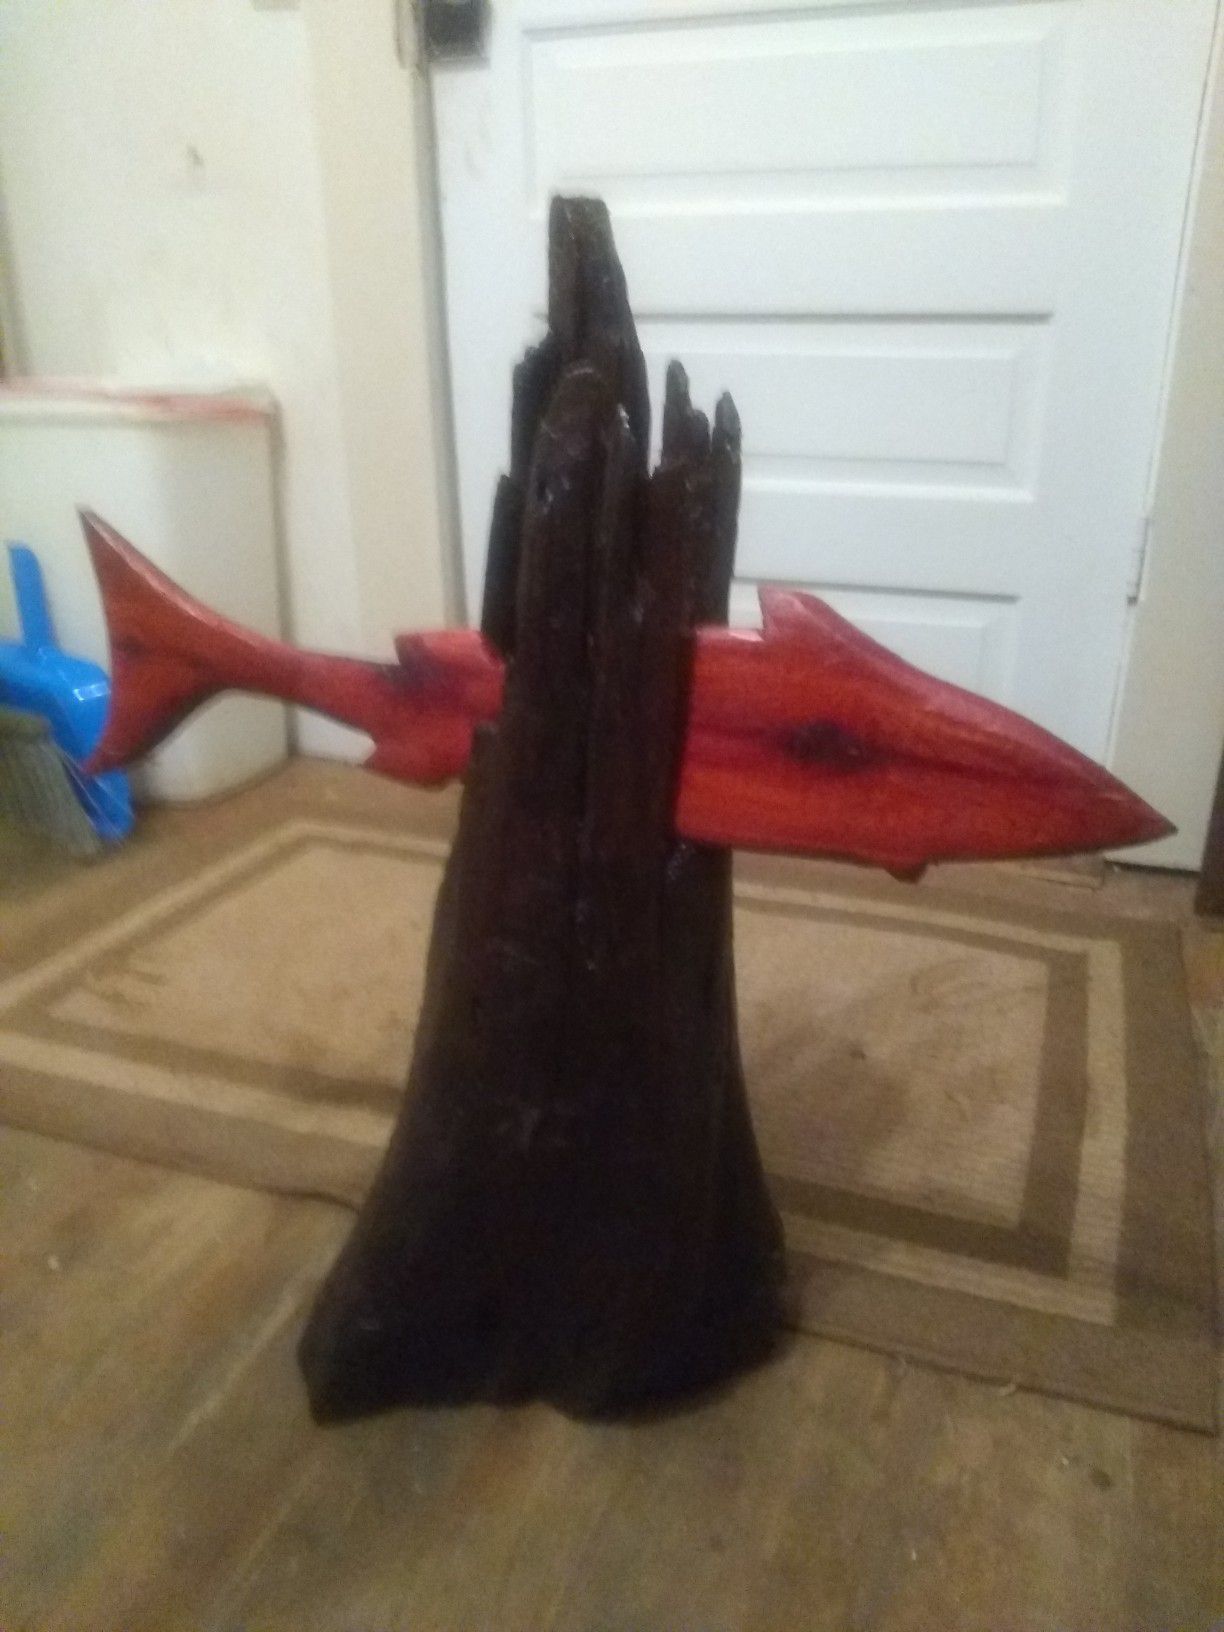 Shark sculpture